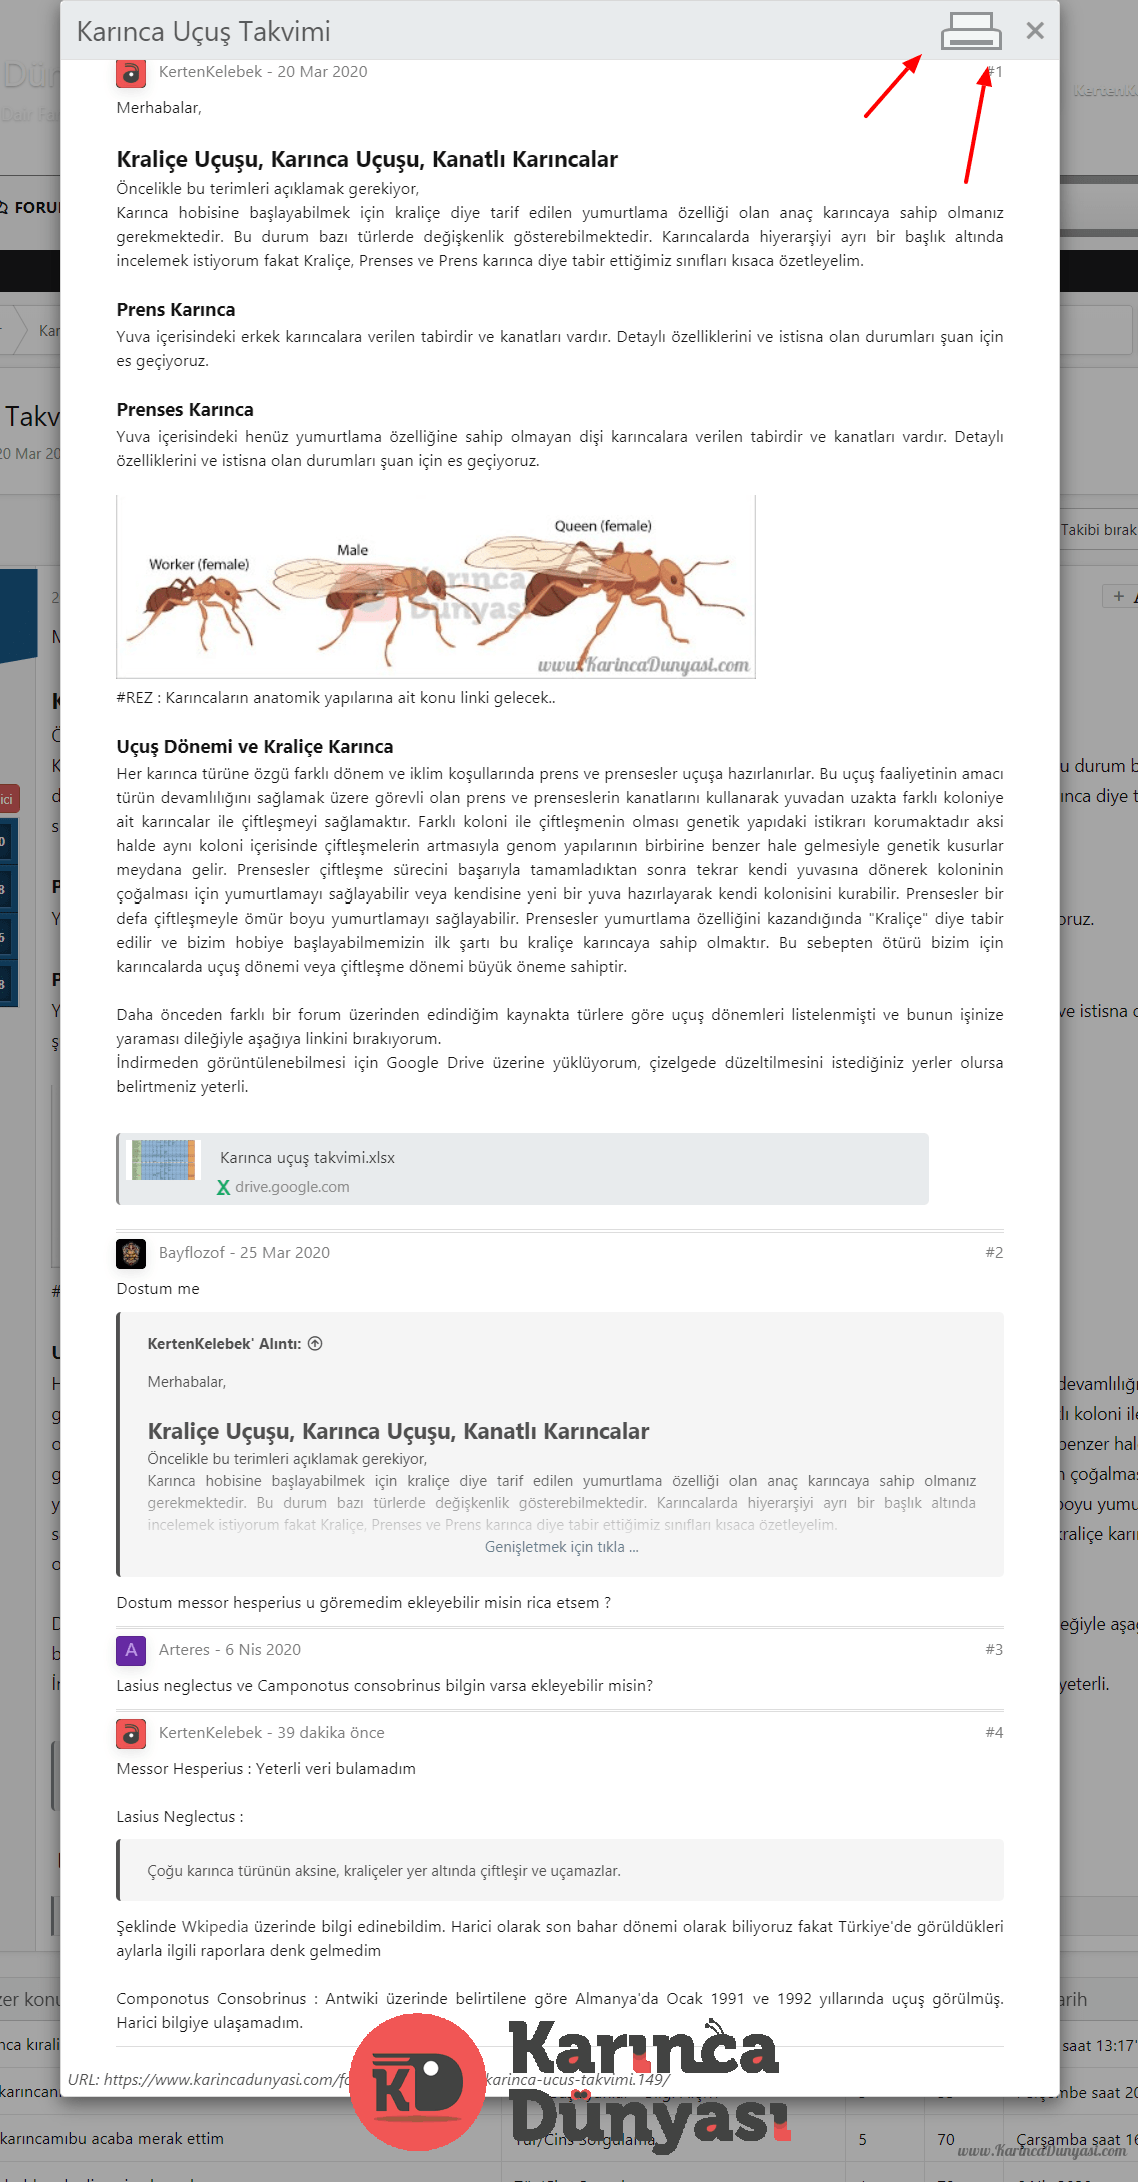 Karınca Dünyası Yazdırma Özelliği.png